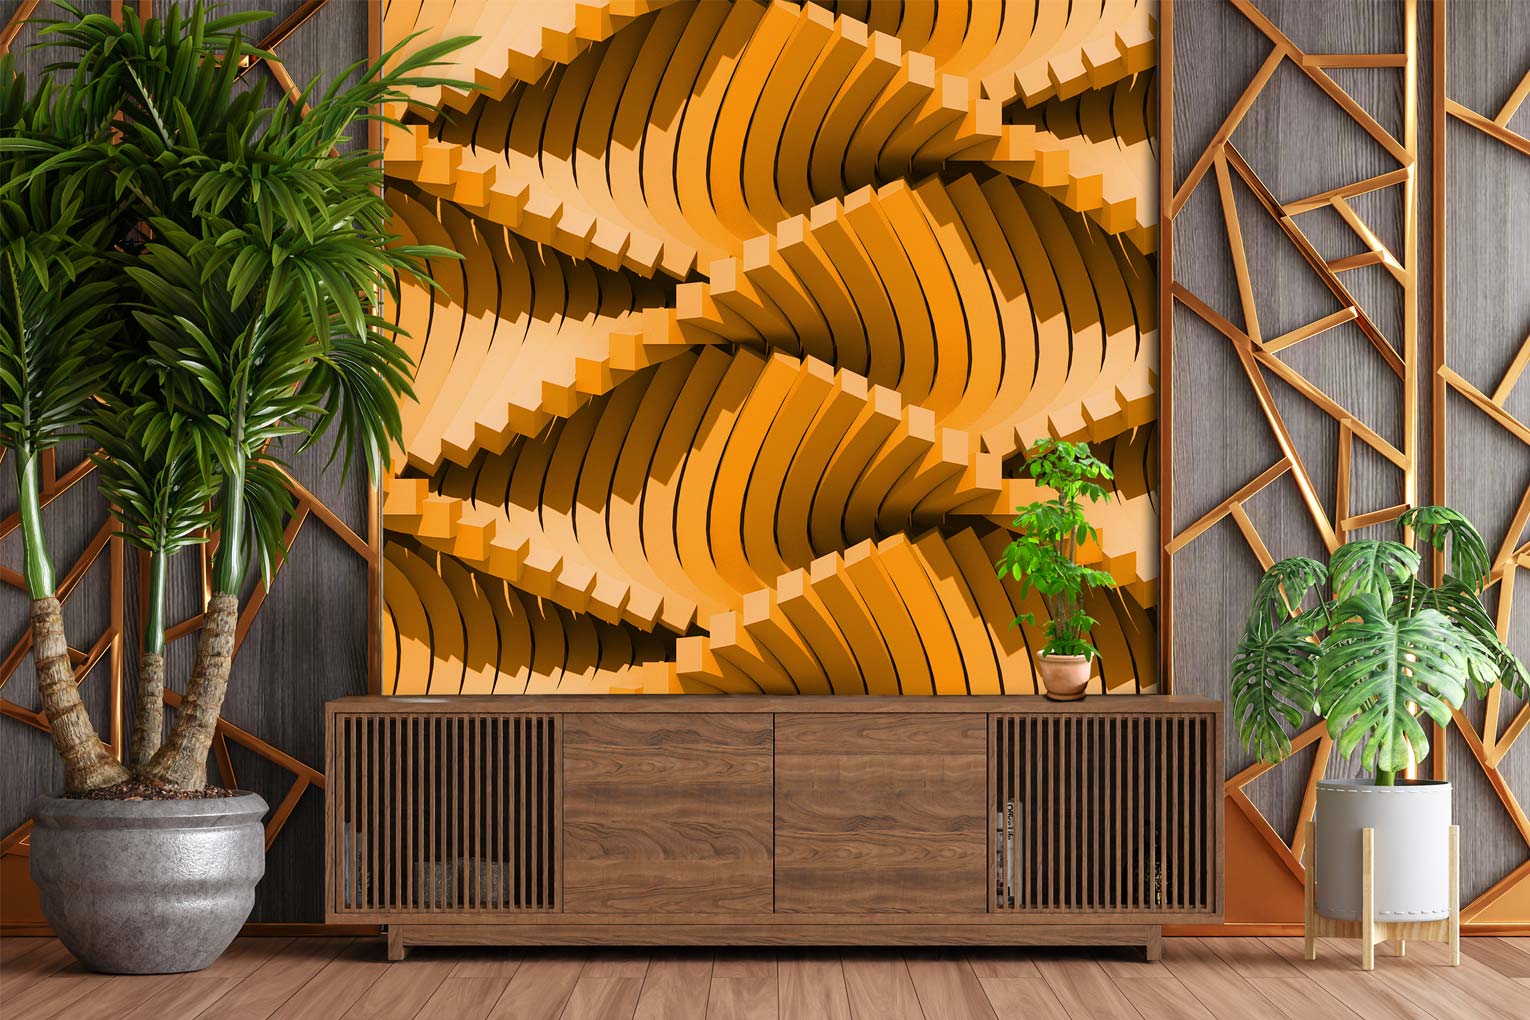 3d wallpaper designs for living room